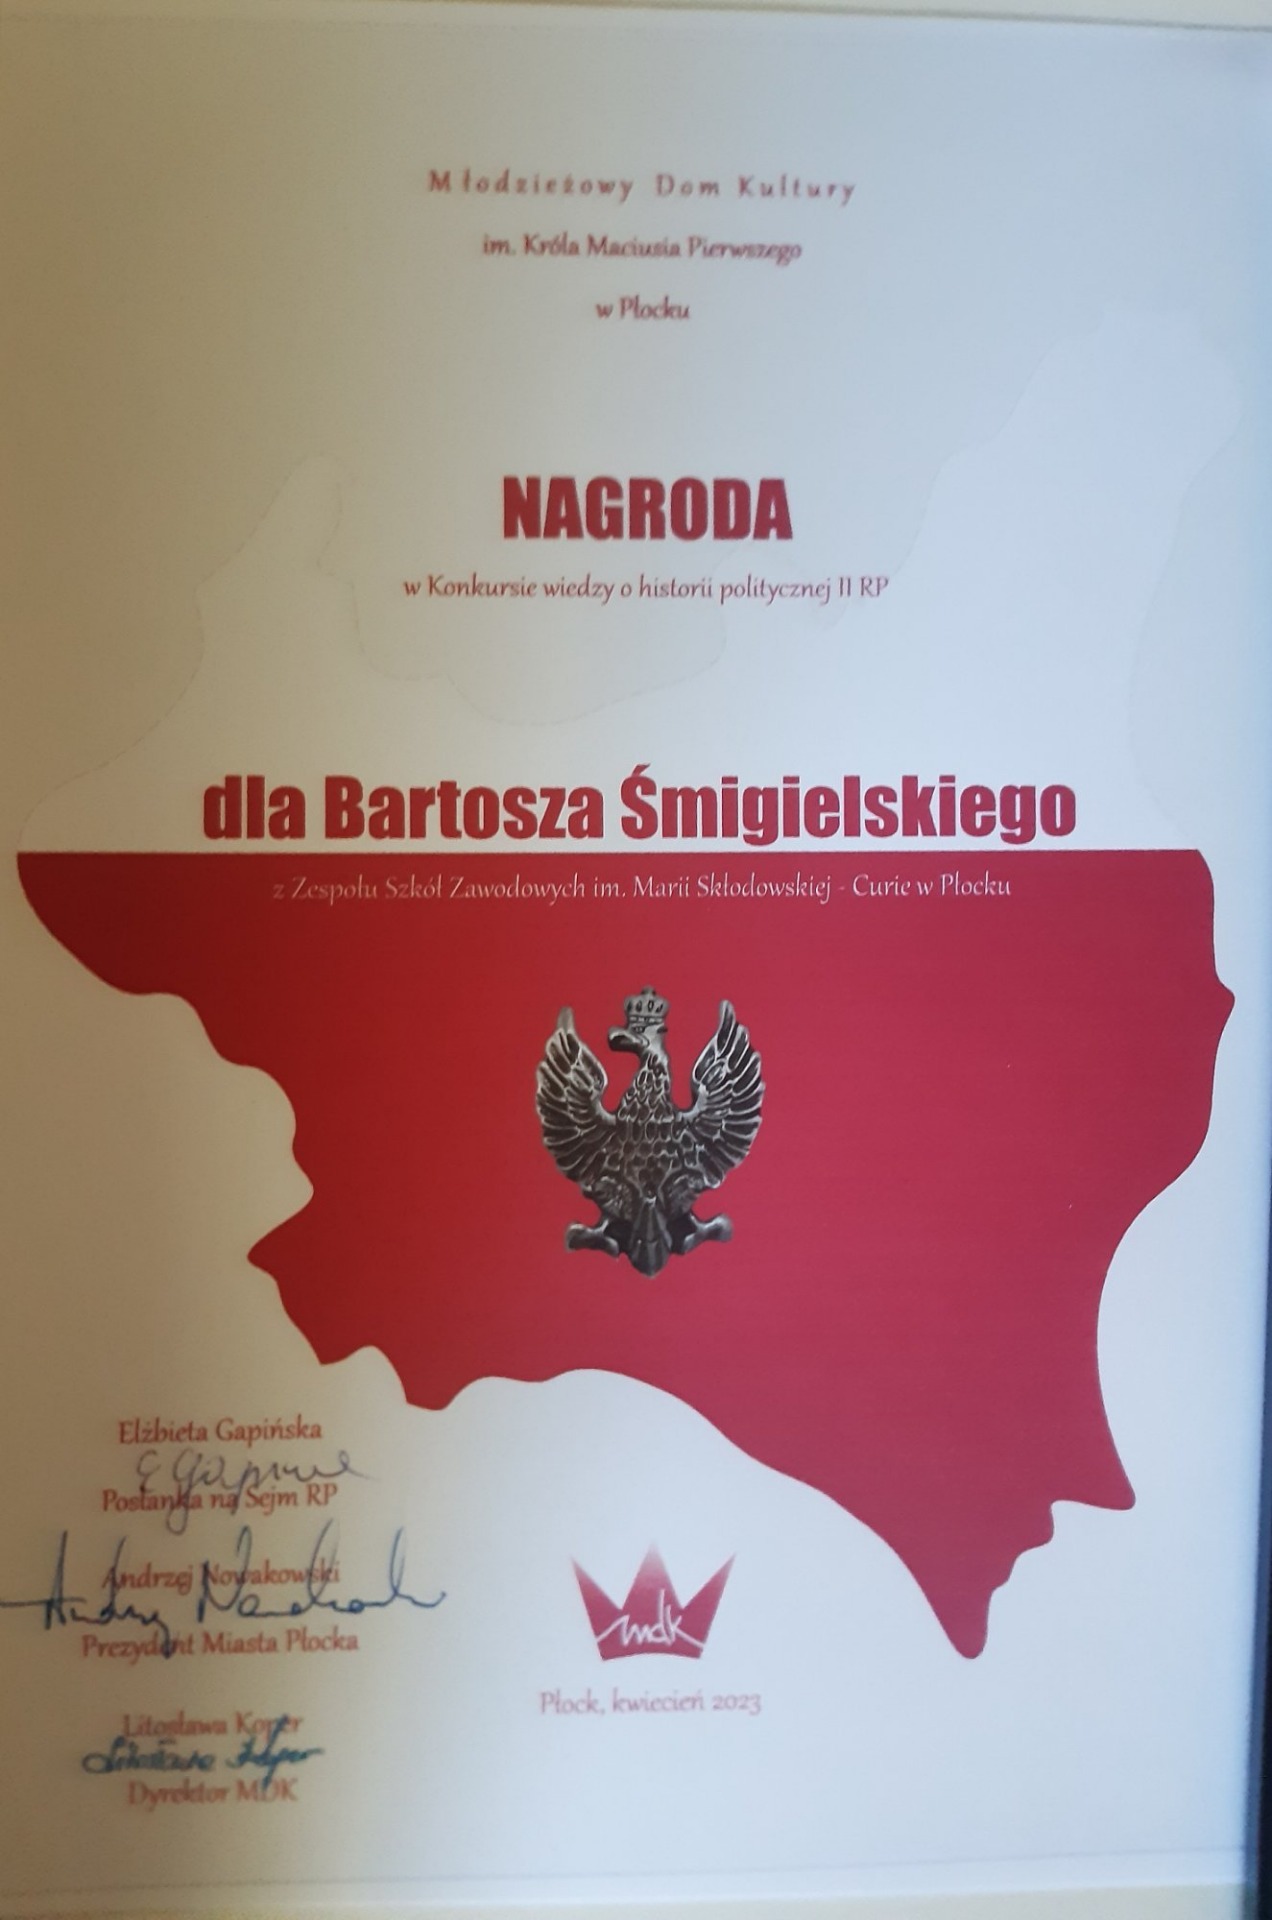 Nagroda w Konkursie wiedzy o historii politycznej II RP dla Bartosza Śmiglielskiego